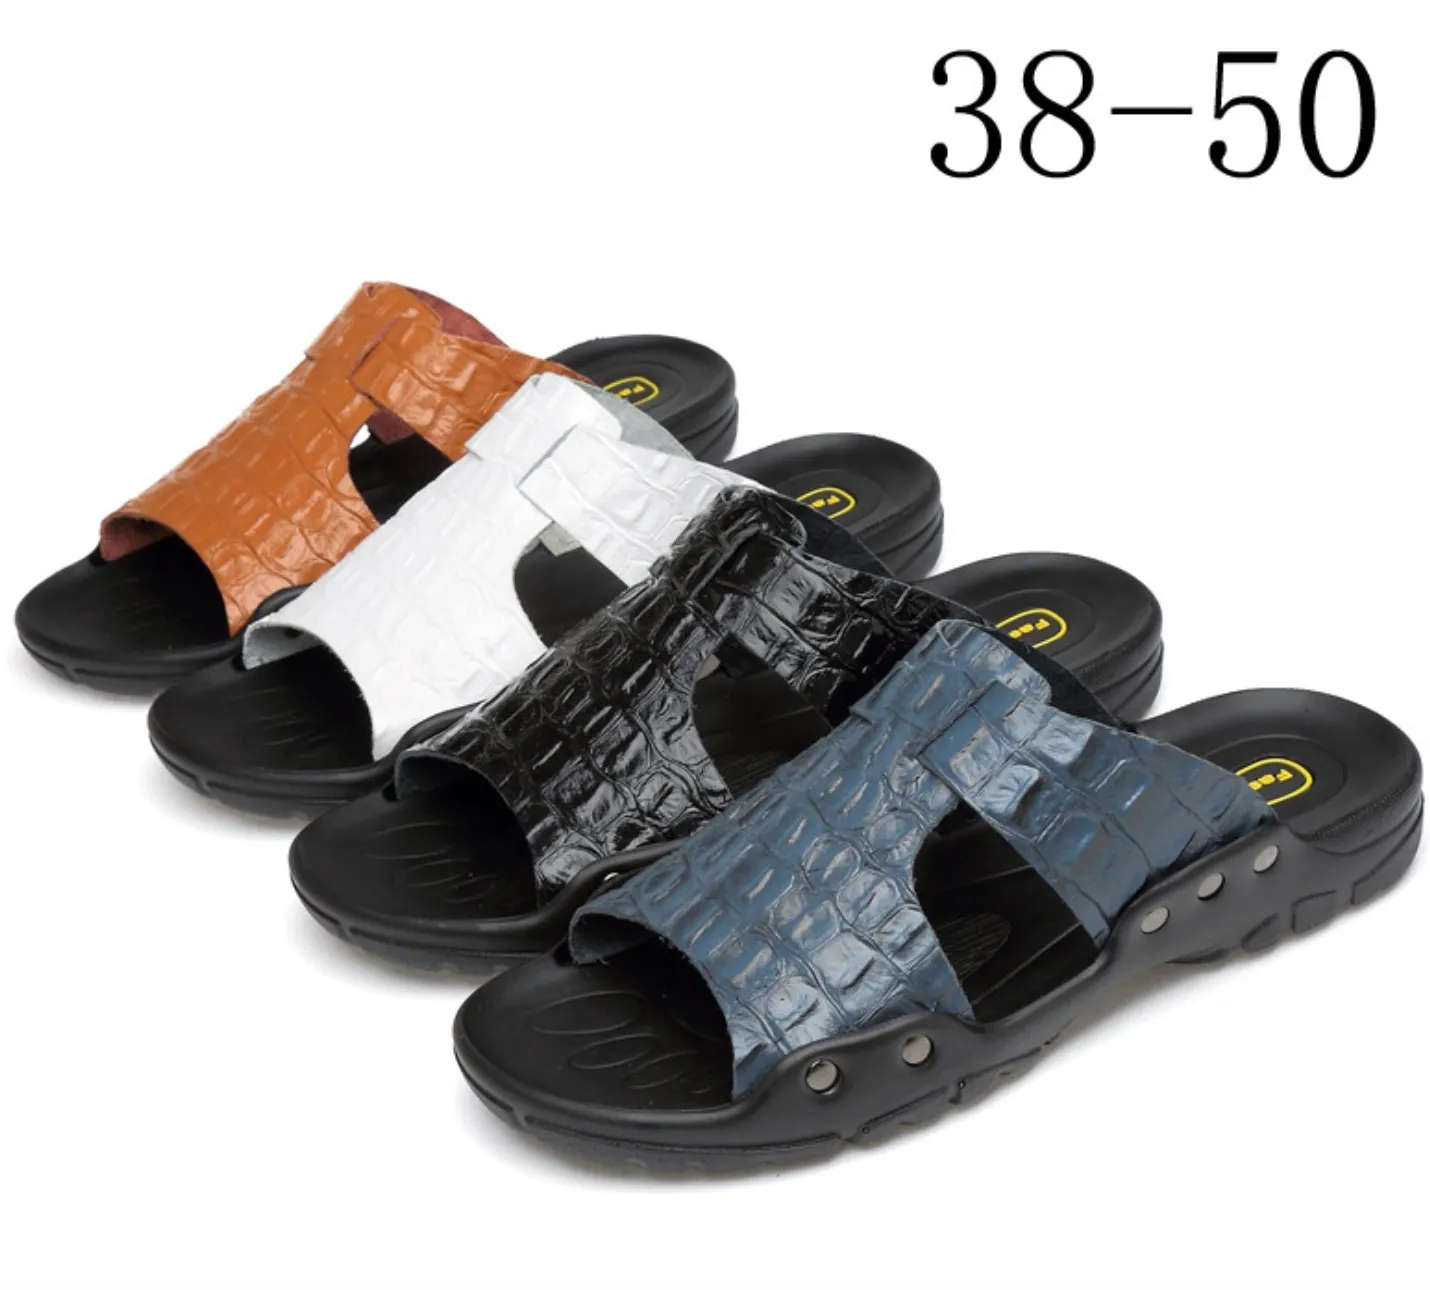 2019 Genuino Uomo In Pelle Infradito Pantofole Design in Coccodrillo Sandali di Marca Estate Mare Spiaggia Appartamenti scarpe di Grandi Dimensioni US 7- 15